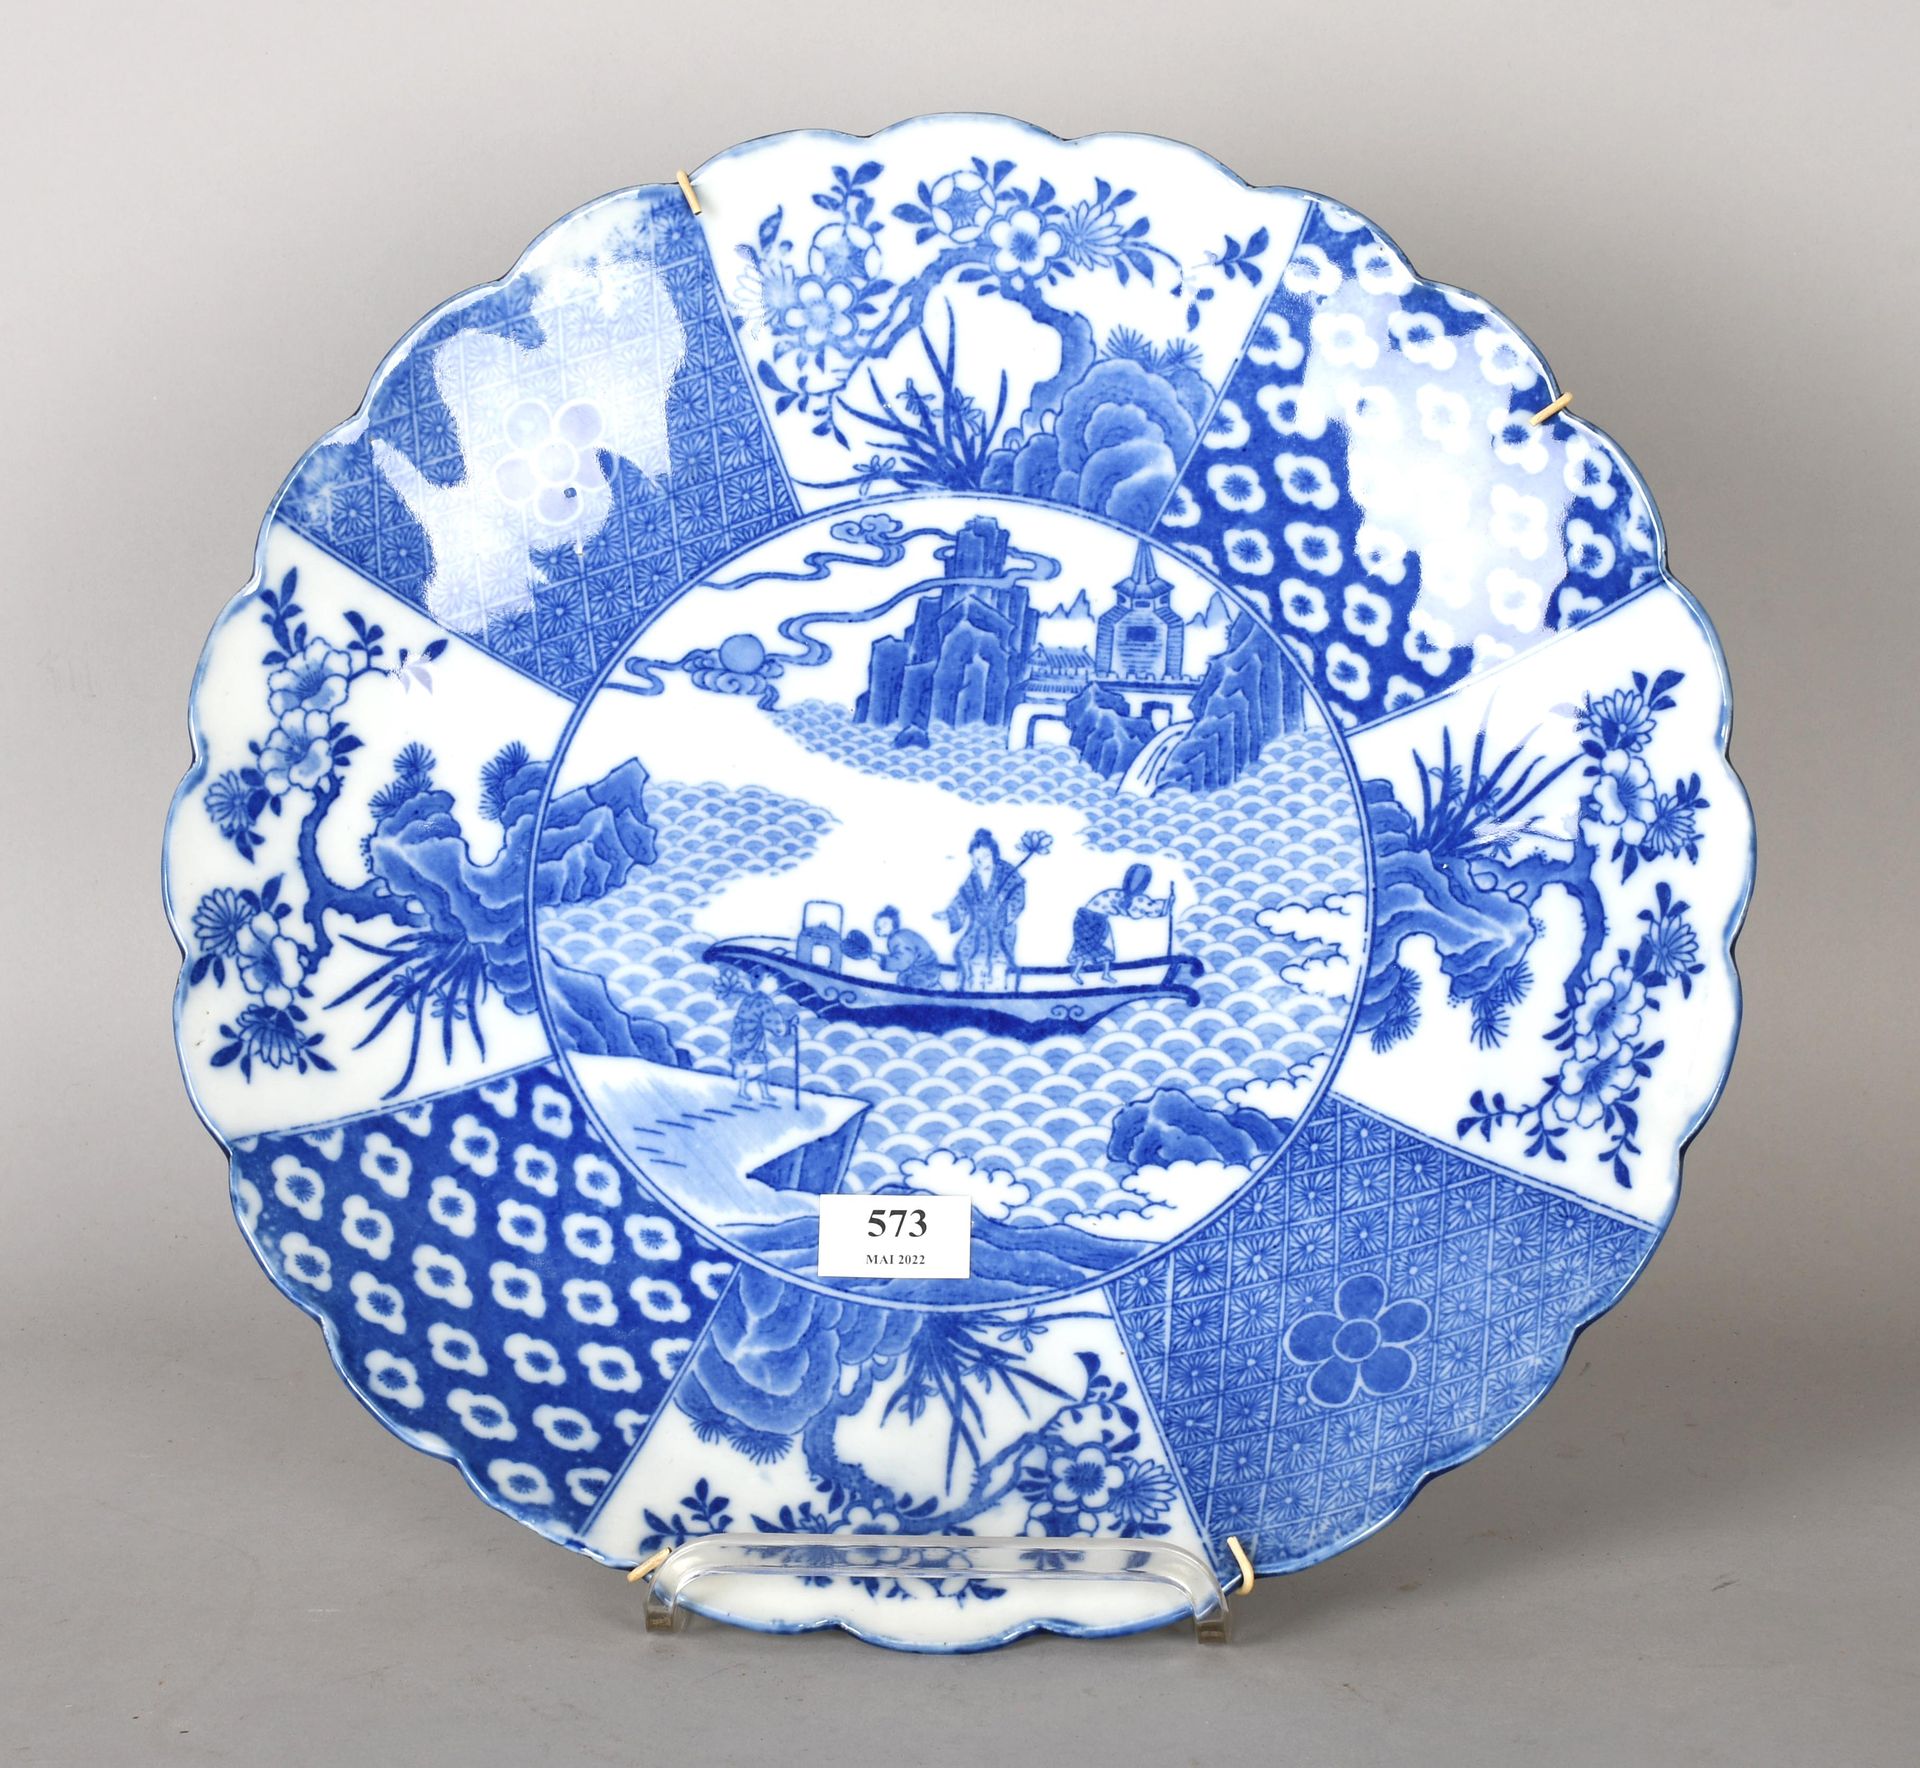 Null 日本

白色和蓝色的瓷器圆盘，边缘有裂纹。

直径：40厘米。